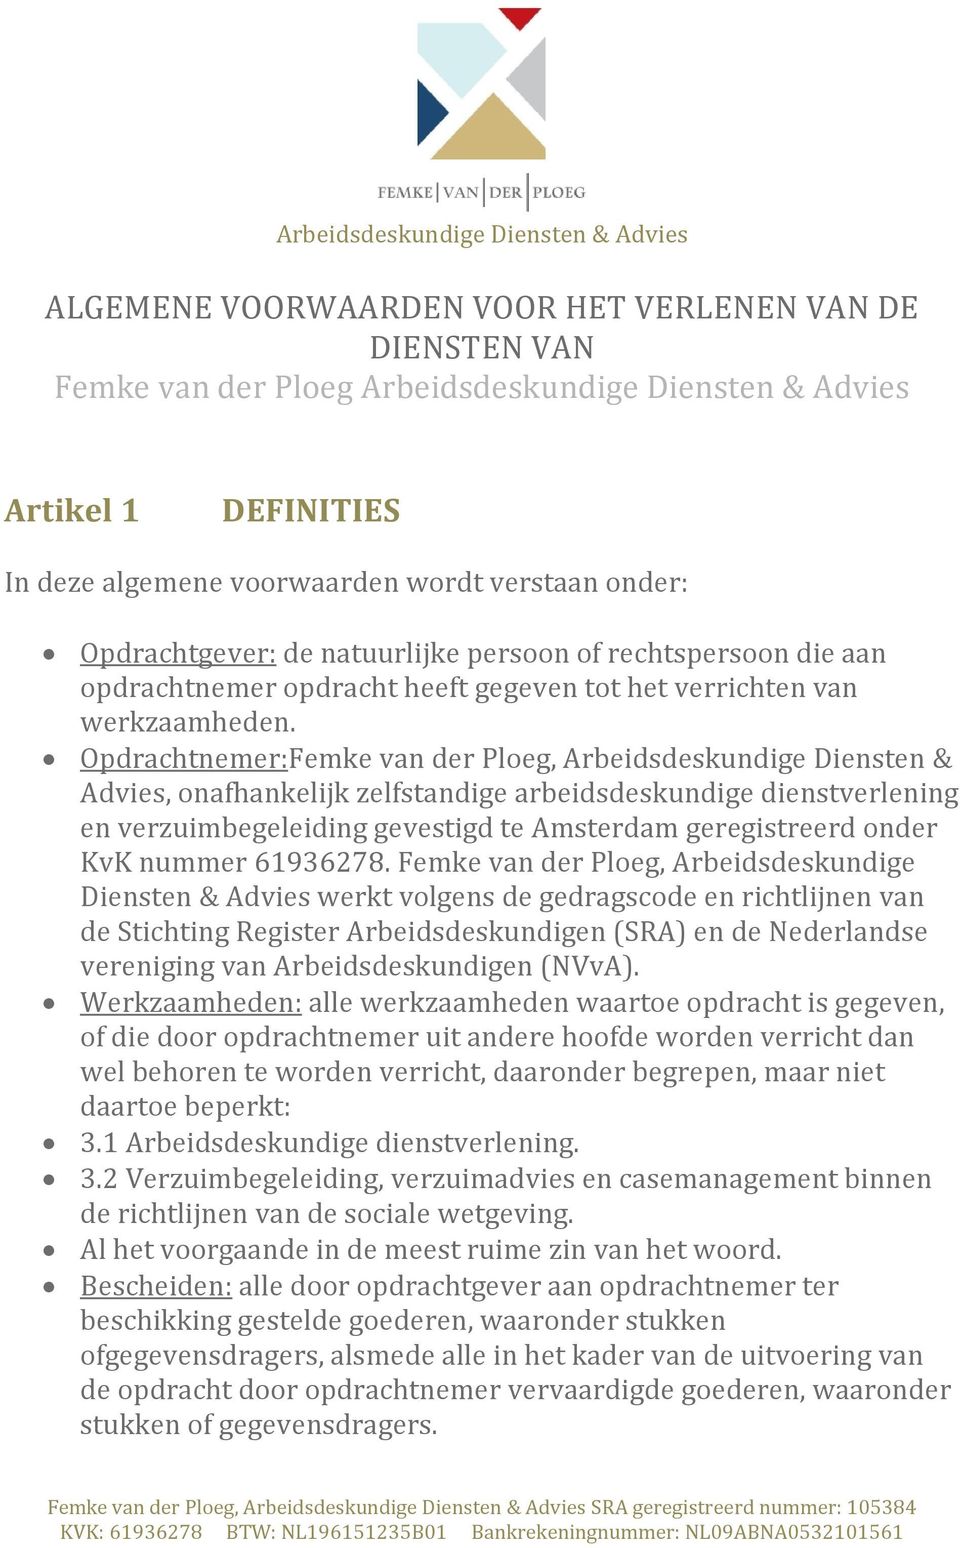 Opdrachtnemer:Femke van der Ploeg, Arbeidsdeskundige Diensten & Advies, onafhankelijk zelfstandige arbeidsdeskundige dienstverlening en verzuimbegeleiding gevestigd te Amsterdam geregistreerd onder